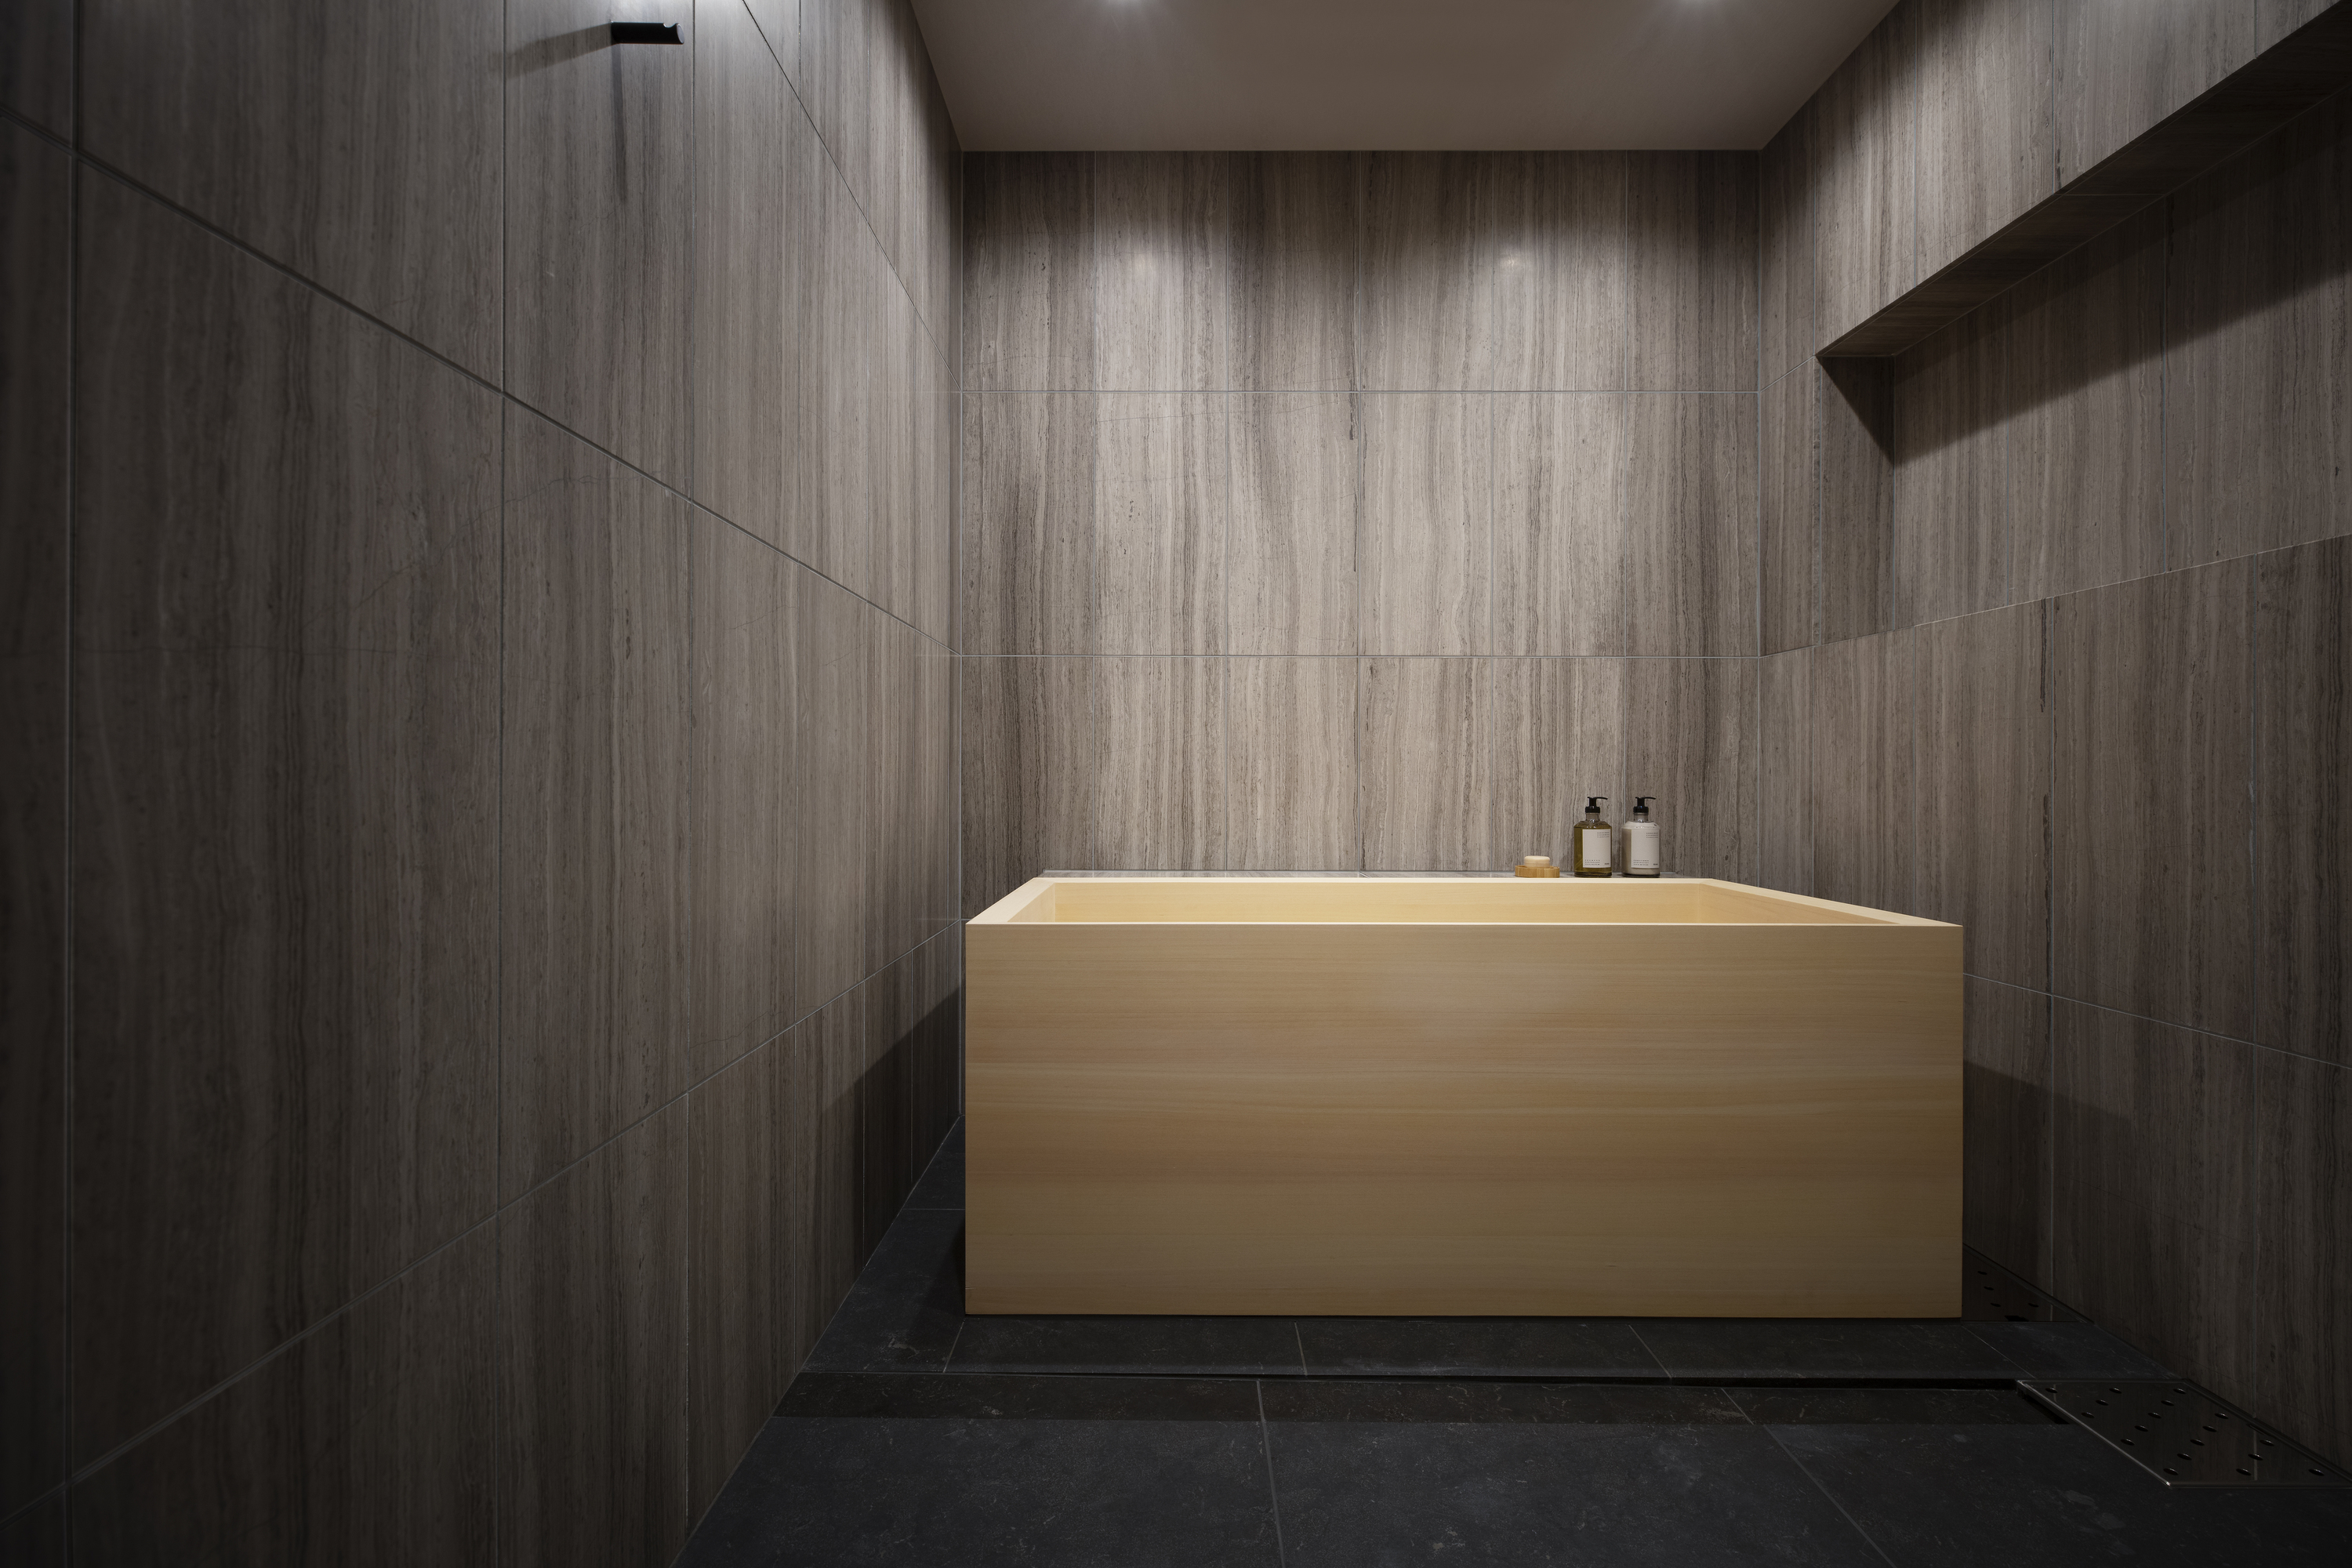 A bathroom with dark walls and a wooden, custom bathtub